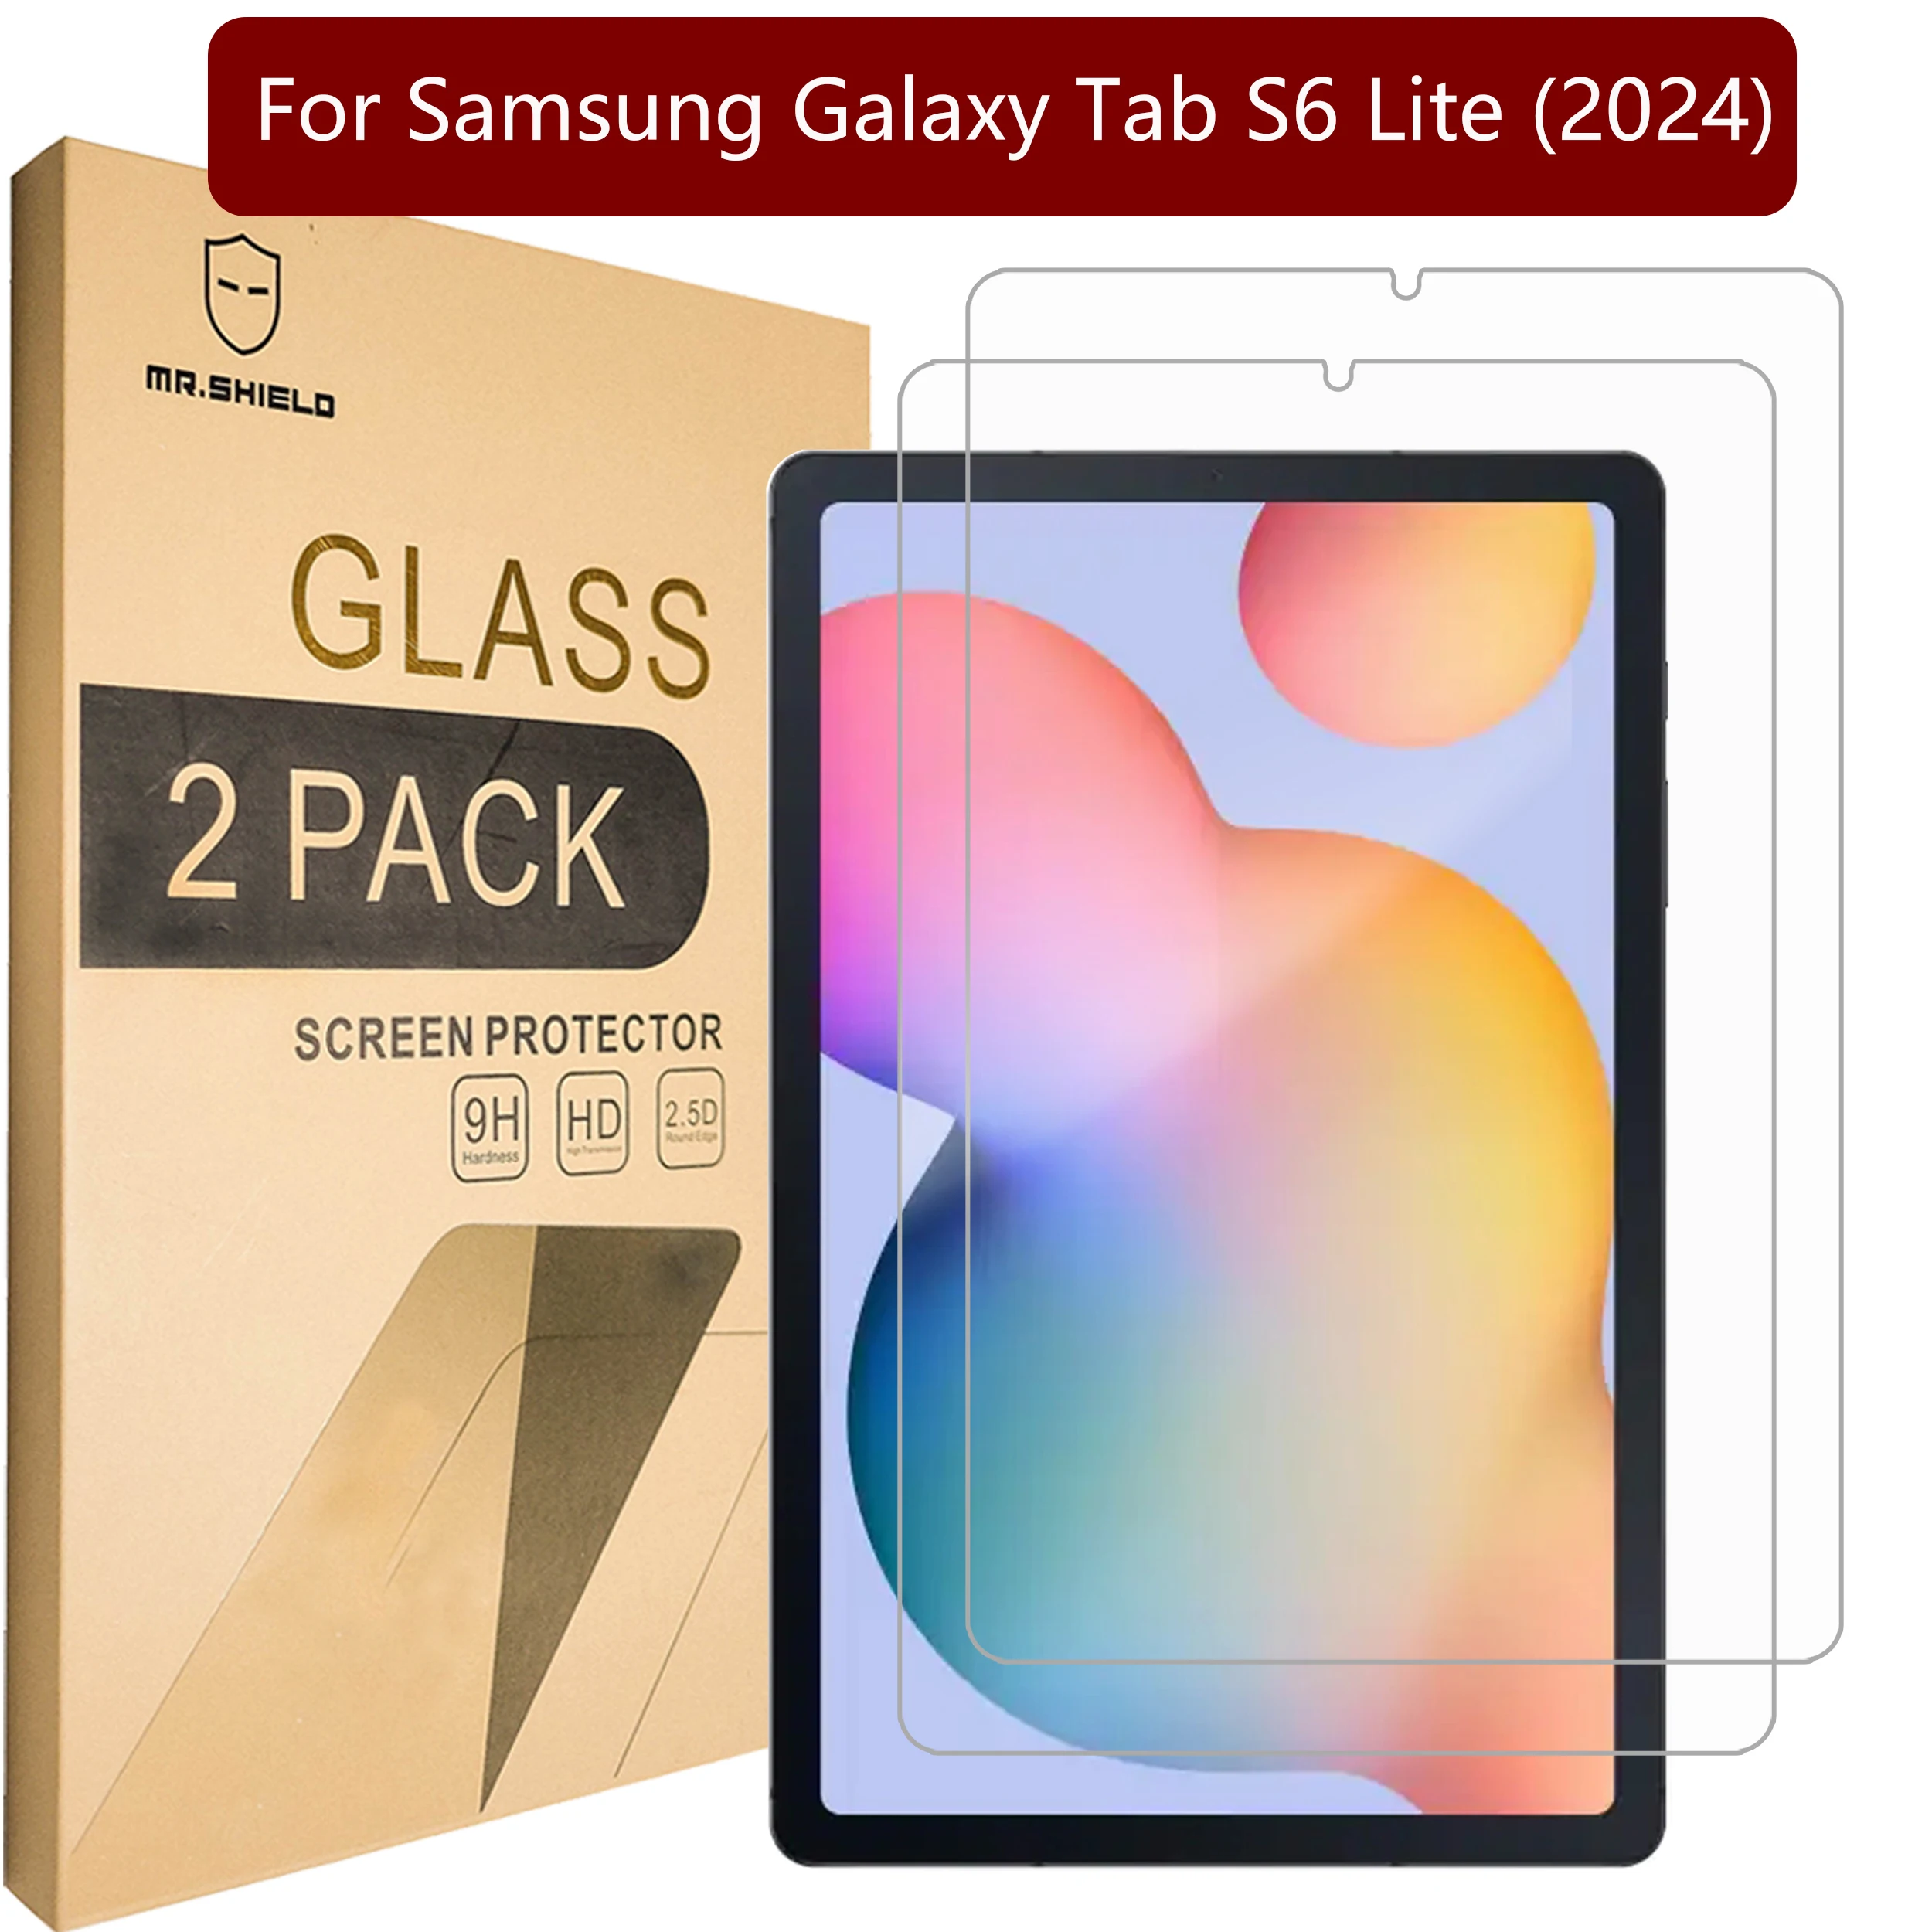 

Защитная пленка Mr.Shield для экрана, совместимая с Samsung Galaxy Tab S6 Lite (2024) [закаленное стекло] [2 шт. в упаковке] [твердость 9H]